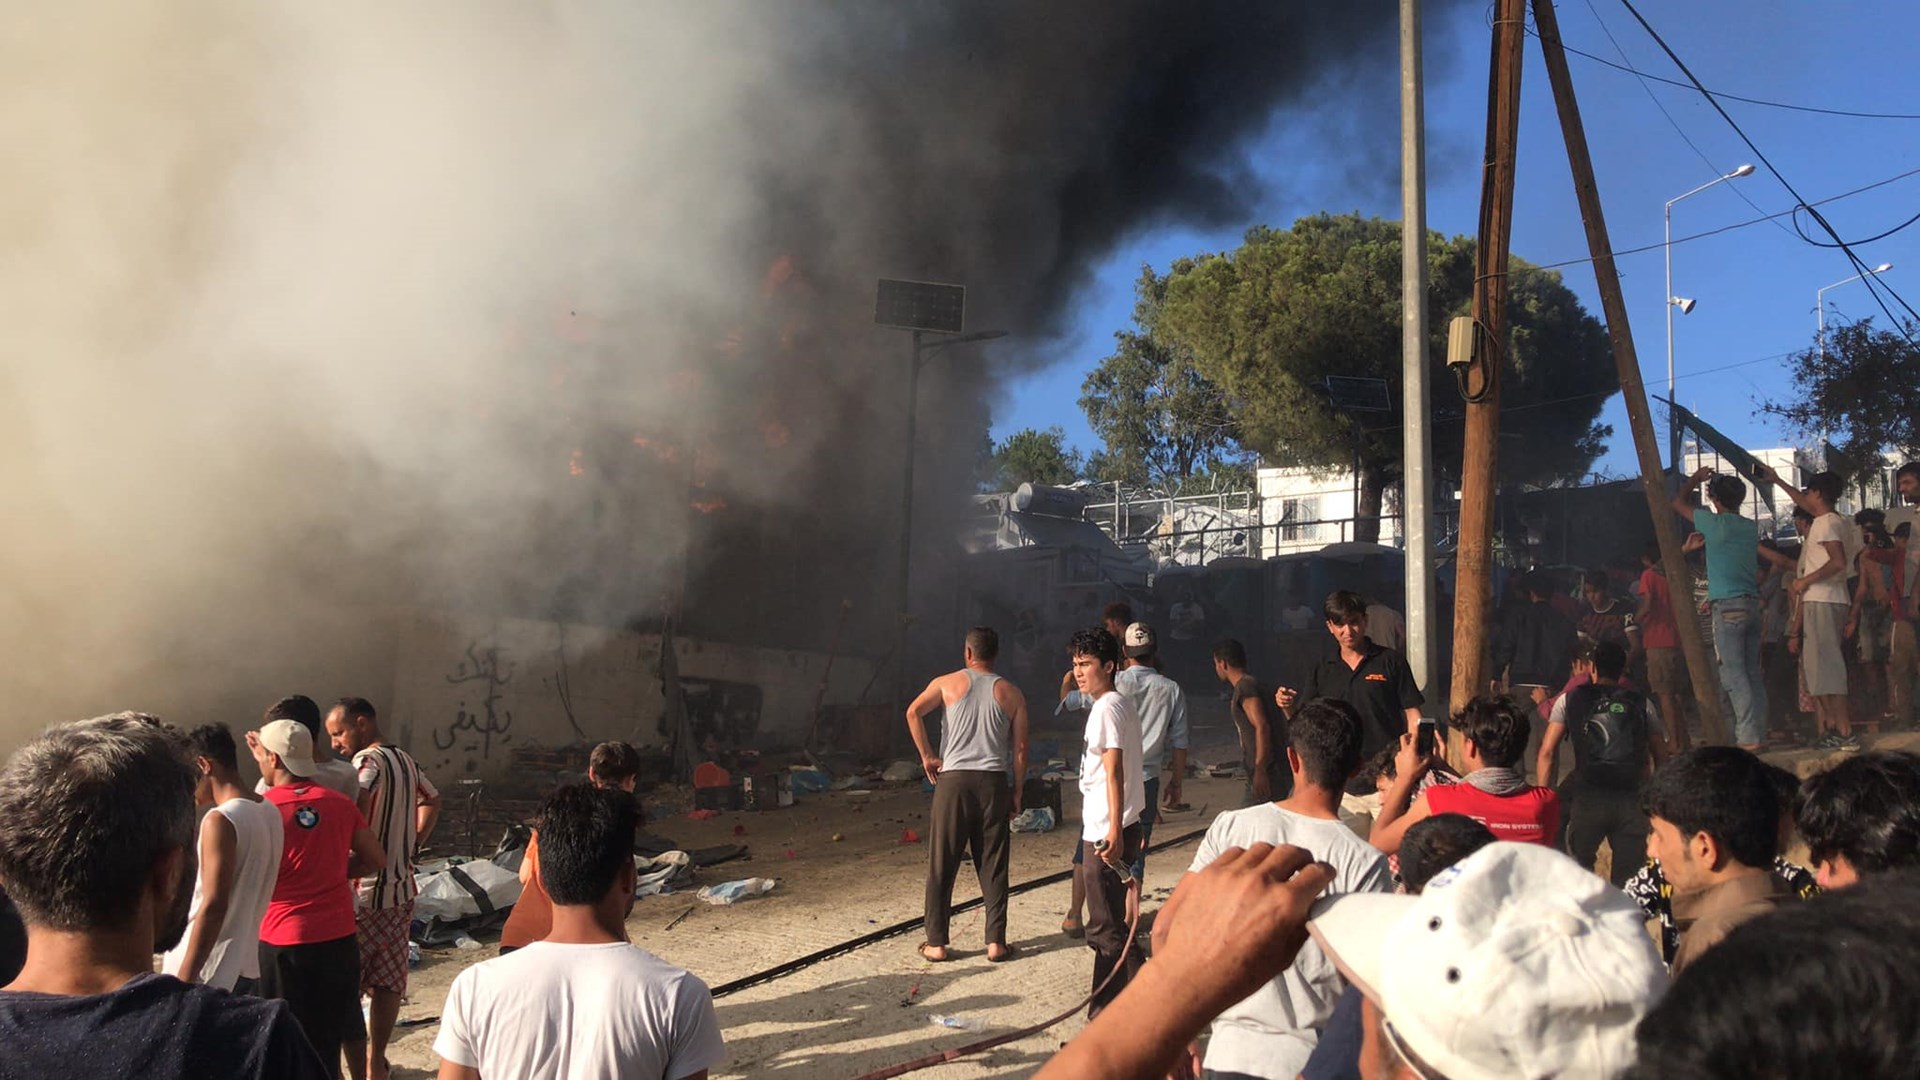 Δήμαρχος Μυτιλήνης: «Είναι τεταμένη η ατμόσφαιρα, οι αλλοδαποί επιτέθηκαν στους αστυνομικούς – Κινδυνεύουμε όλοι»